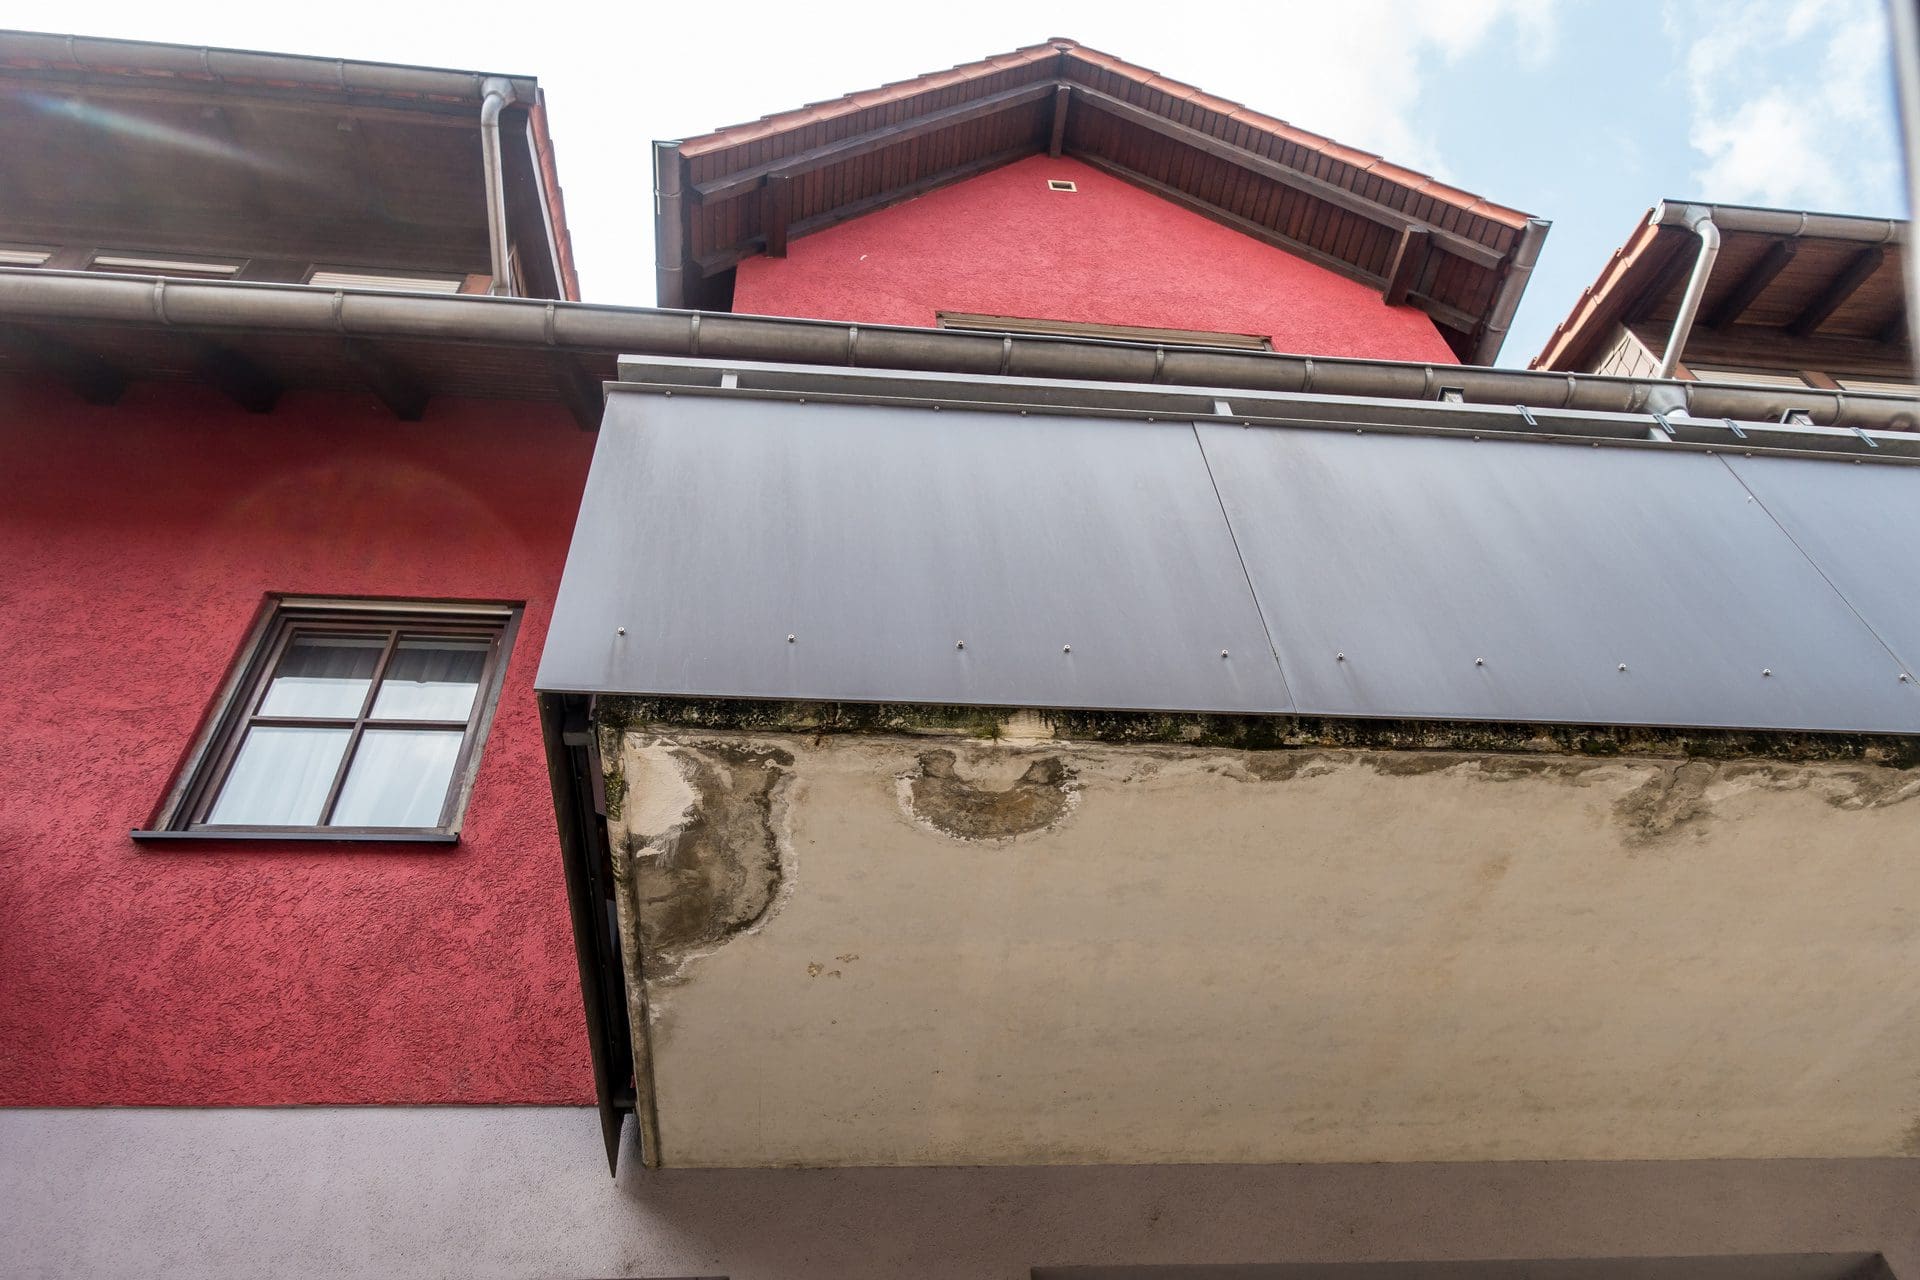 Nässeschäden am Balkon - ein Fall für die Gebäudeversicherung? (© focus finder / stock.adobe.com)